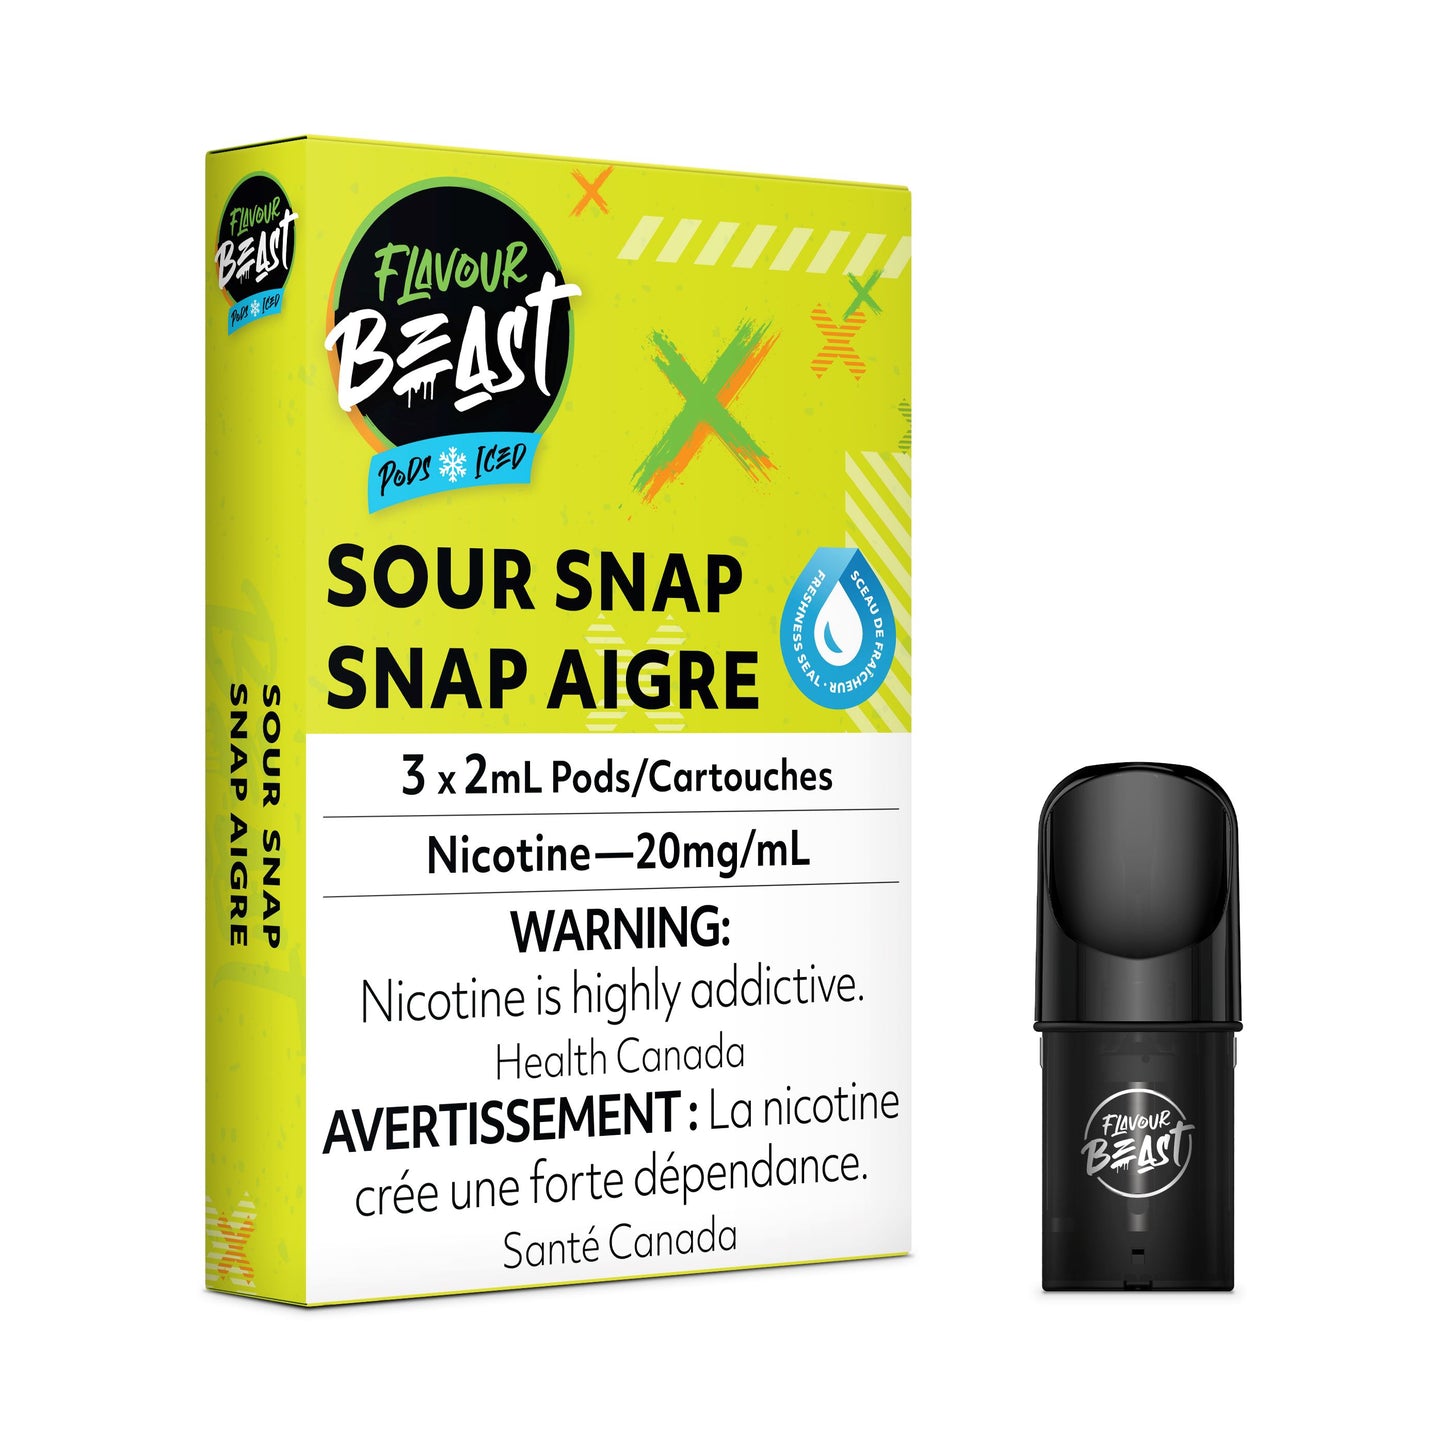 Sour Snap - FB CLOSED PODS Flavour Beast Flow 